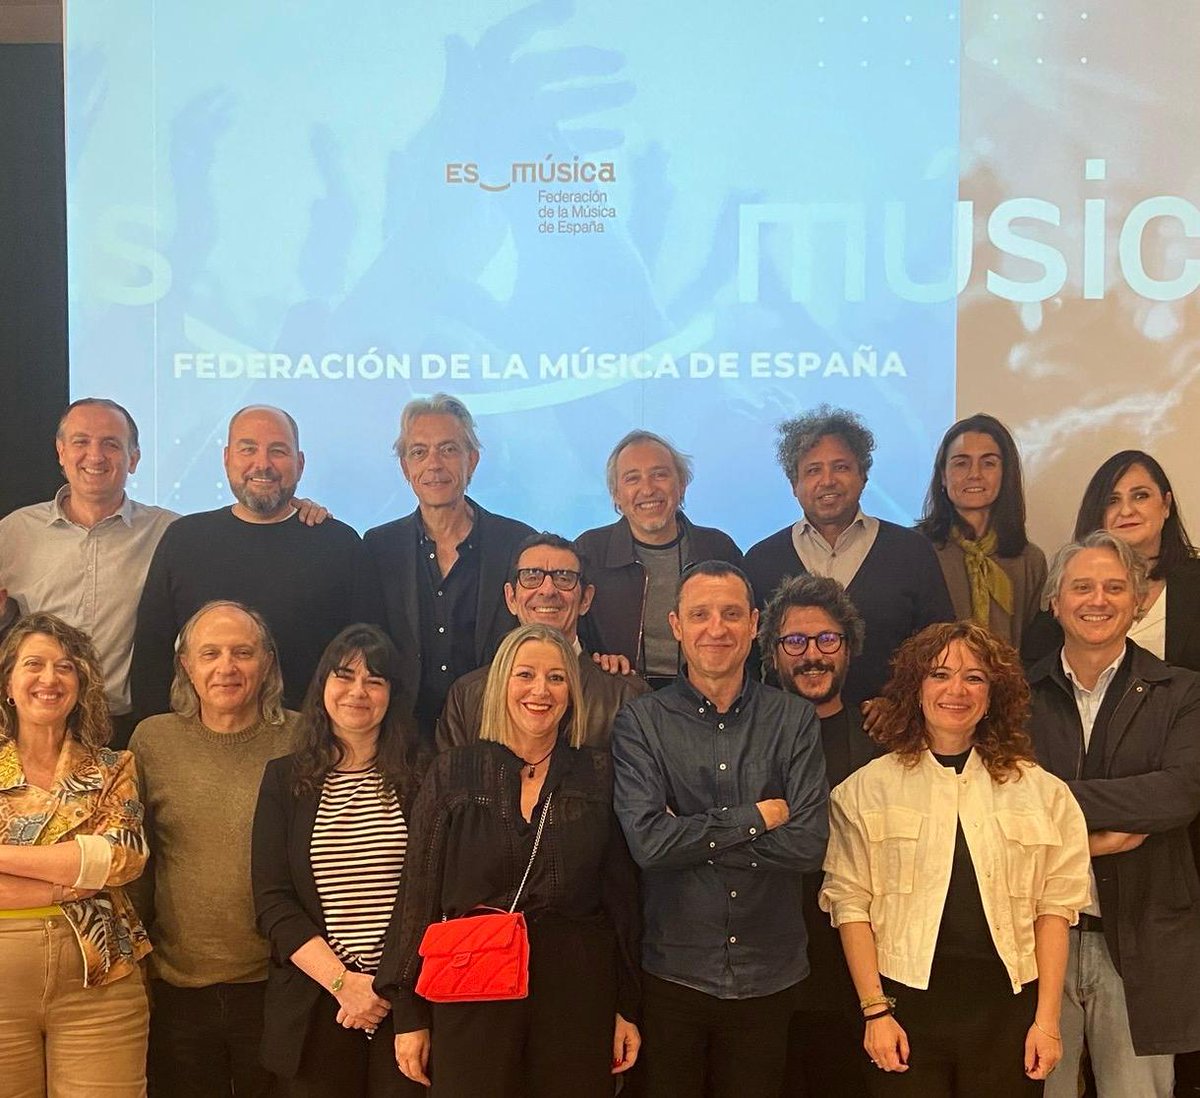 #MadridenVivo se reúne con @esmusica_org, la Federación de la Música de España, junto a asociaciones como @apmusicales, @Salasconciertos (ACCES) y @ARTEspectaculo para trabajar en favor de una merecida representación y defensa de la música en las instituciones nacionales